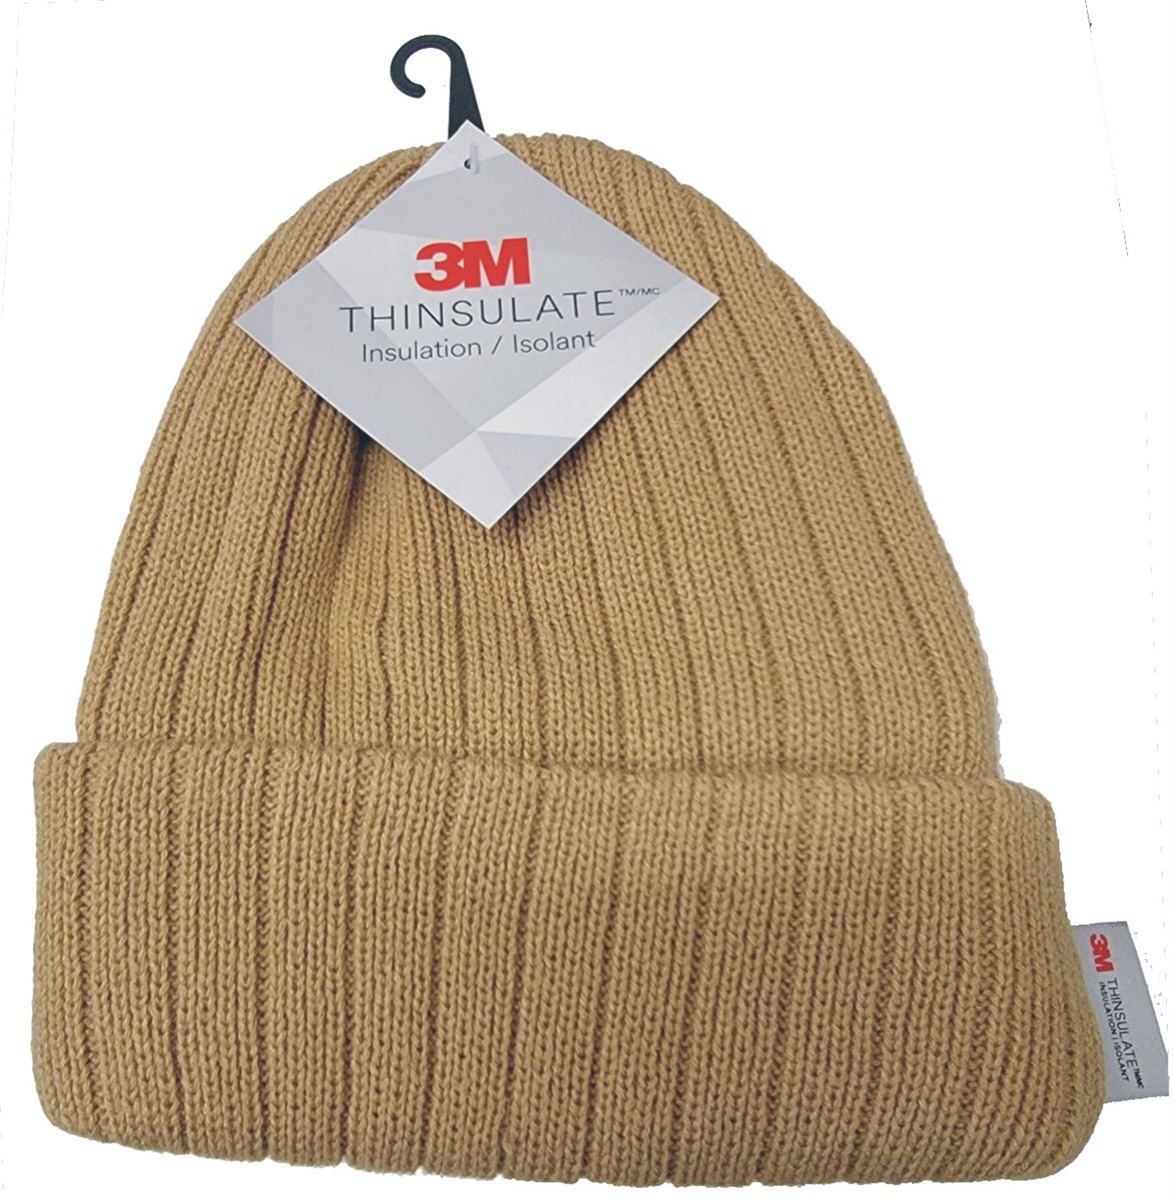 3M Thinsulate knit beanie